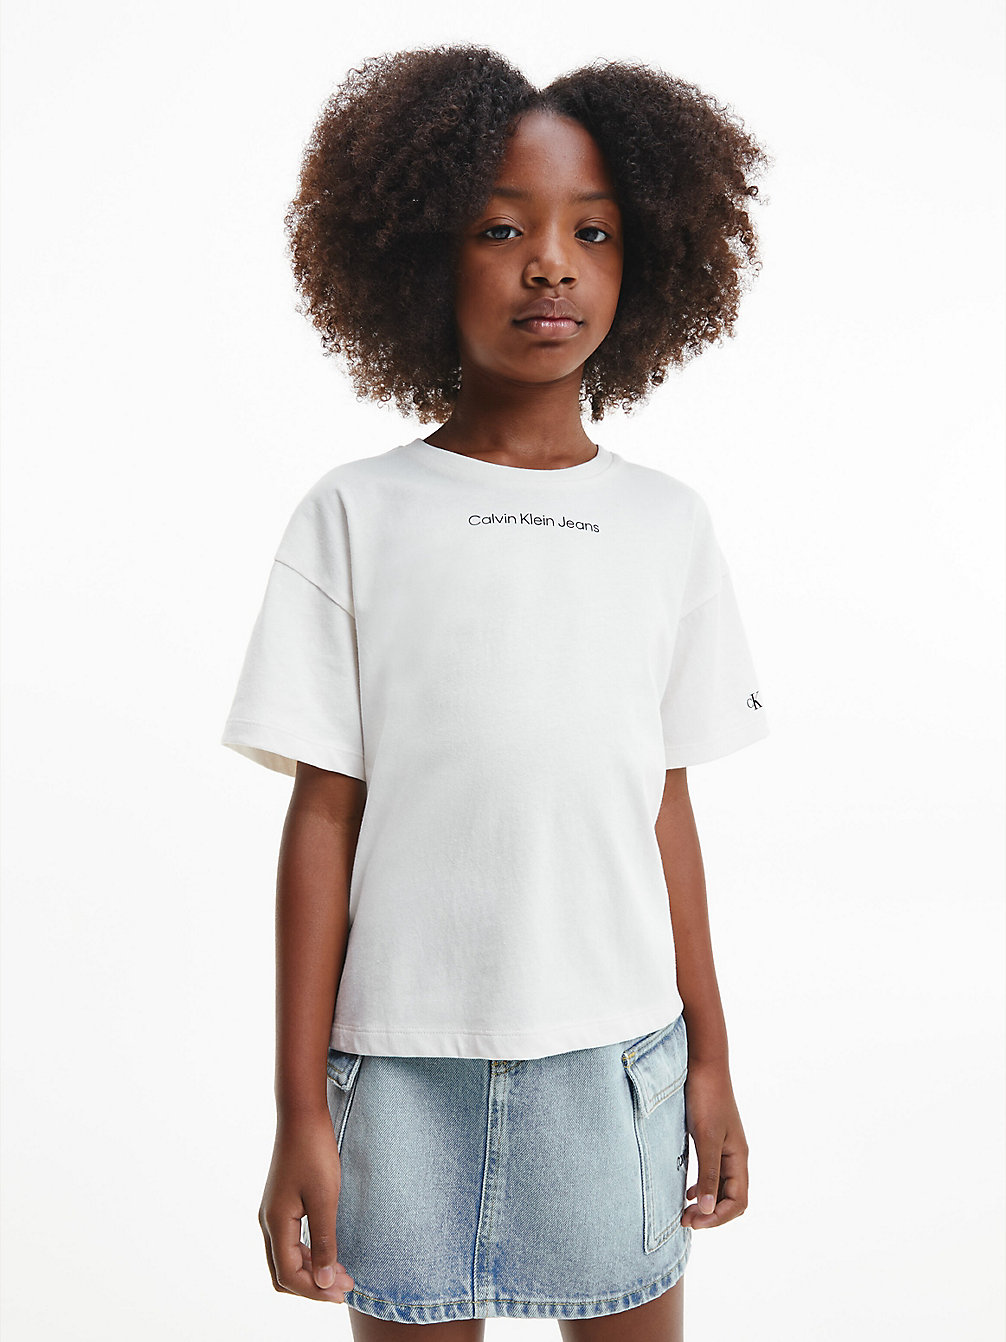 IVORY Kastiges T-Shirt Aus Bio-Baumwolle undefined girls Calvin Klein